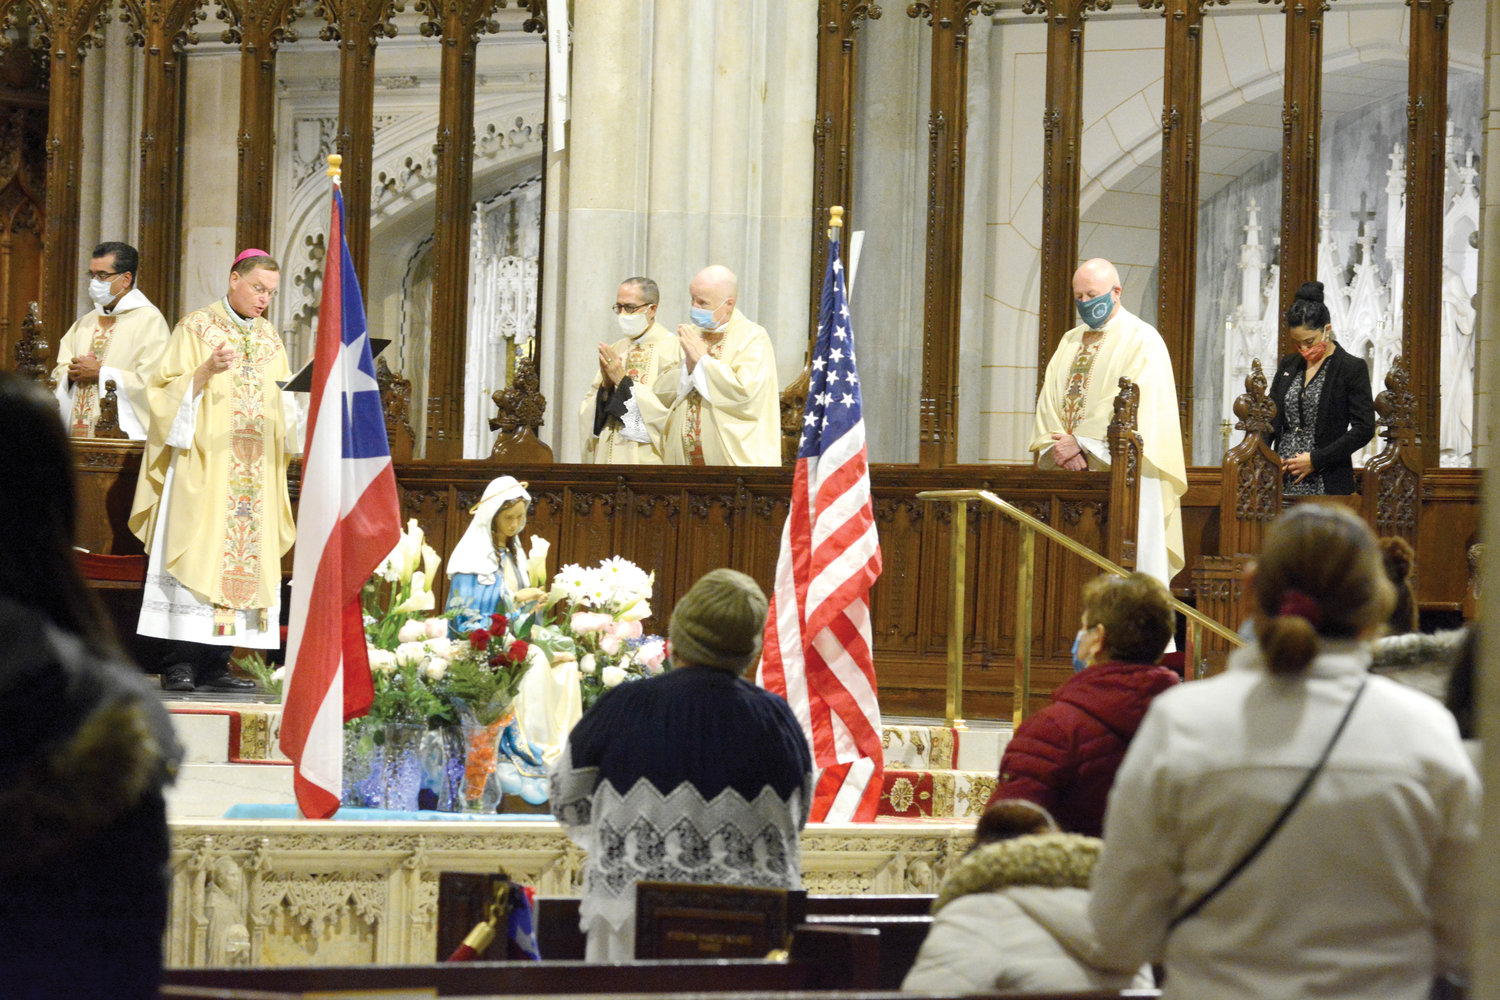 NUESTRA SEÑORA DE LA PROVIDENCIA—El obispo auxiliar Edmund Whalen celebra la 40ª misa anual de Nuestra Señora de la Providencia el 15 de noviembre en la Catedral de San Patricio. En el santuario hay una estatua de Nuestra Señora de la Providencia entre las banderas de Puerto Rico y los Estados Unidos. Nuestra Señora de la Providencia es la patrona de Puerto Rico.